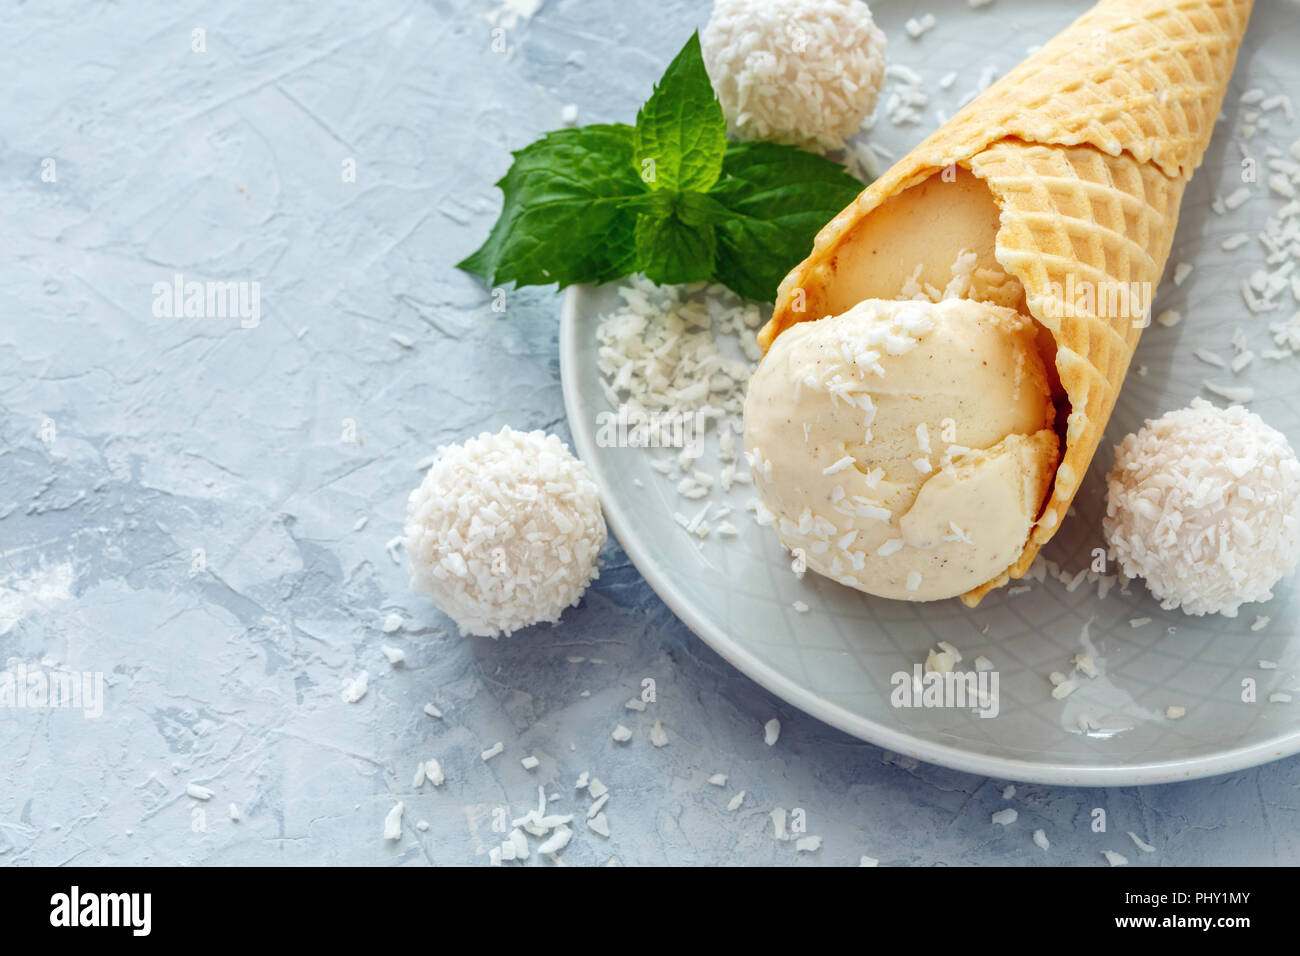 Cono con helado de coco y coco trufas. Foto de stock